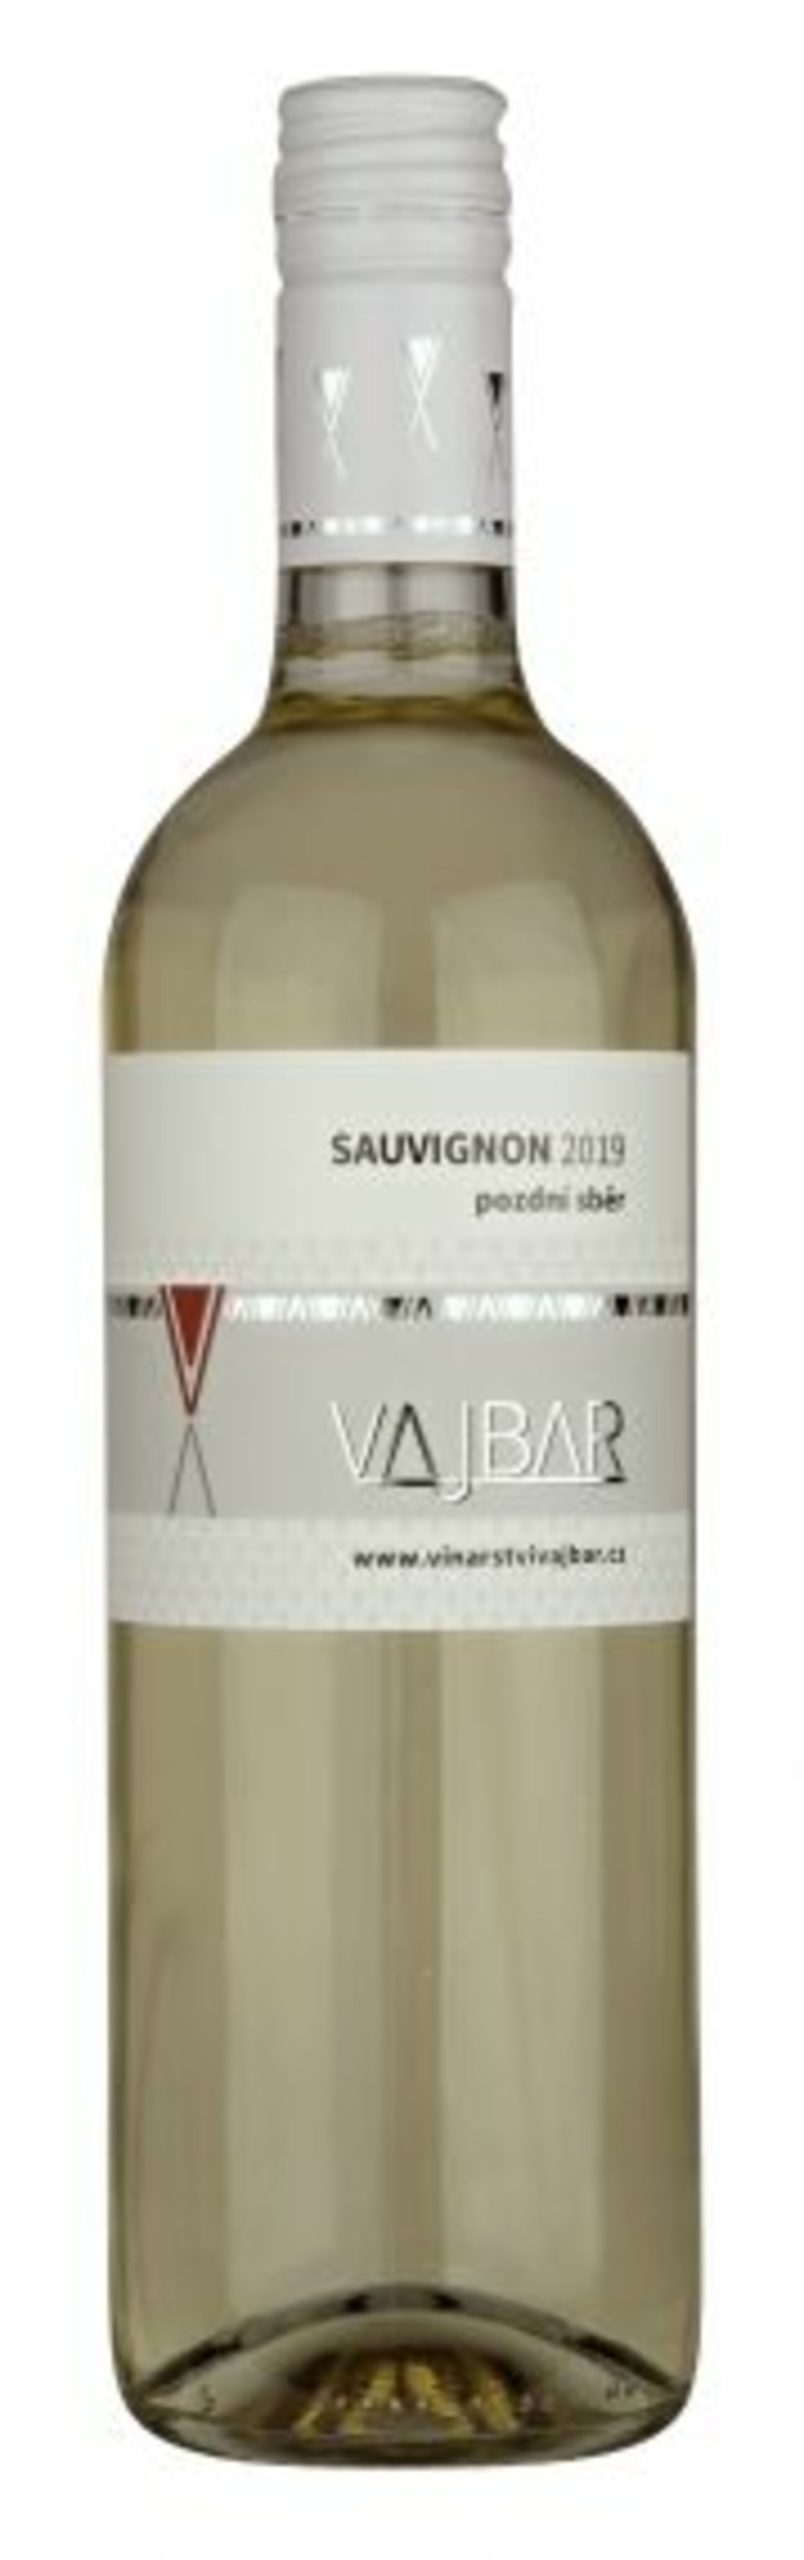 Vajbar Sauvignon jakostní víno s přívlastkem pozdní sběr 2019 suché 0